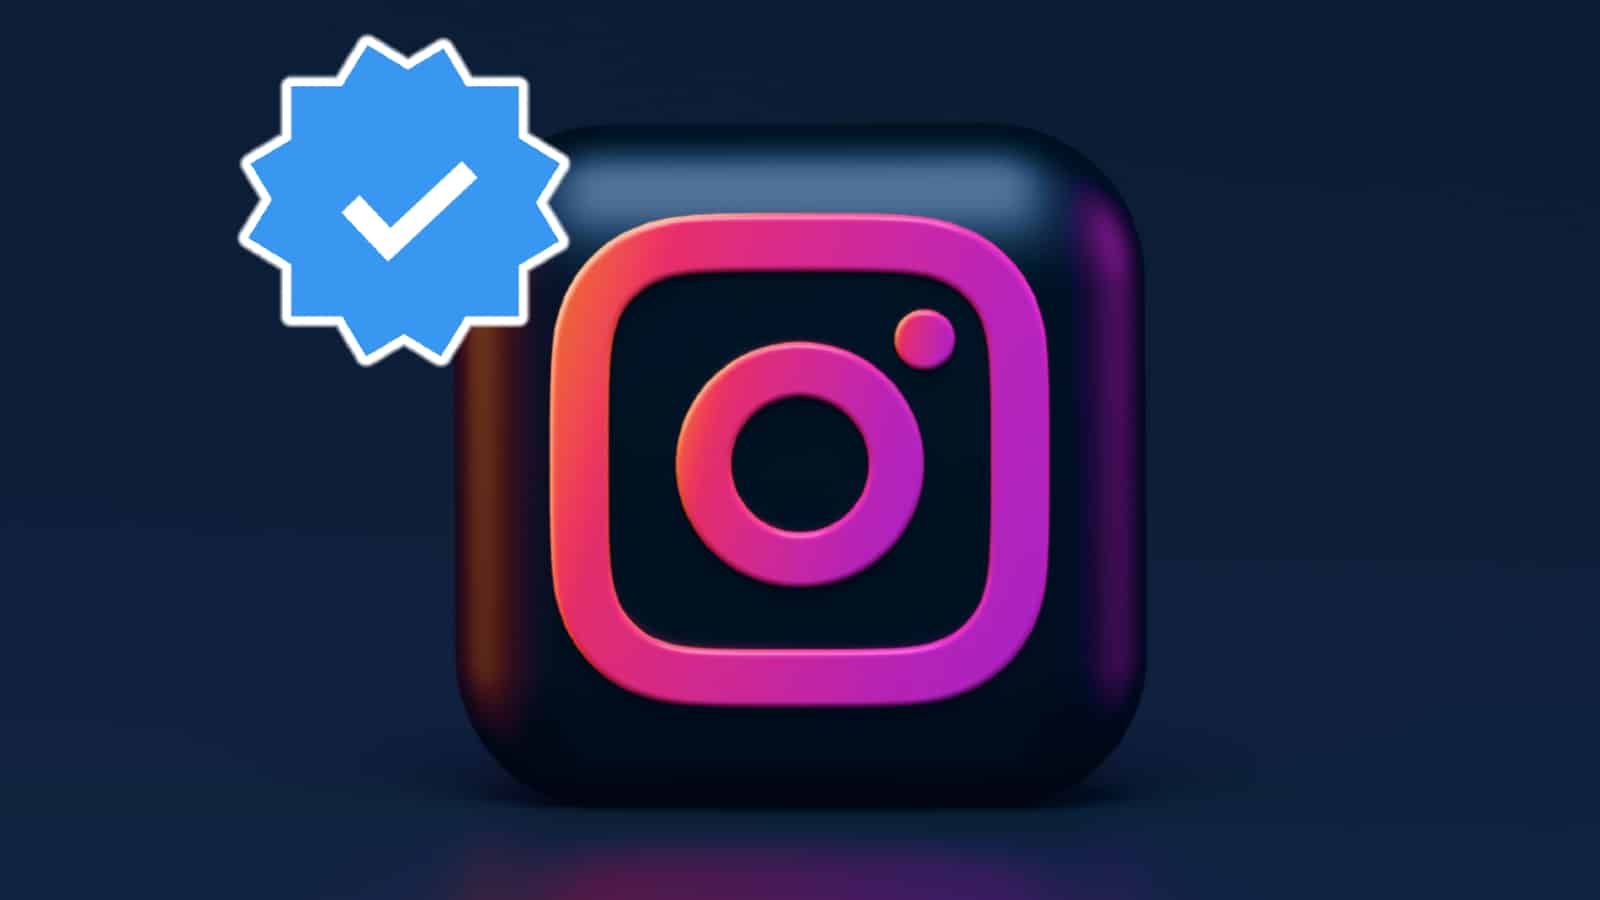 Verified tick on Instagram logo